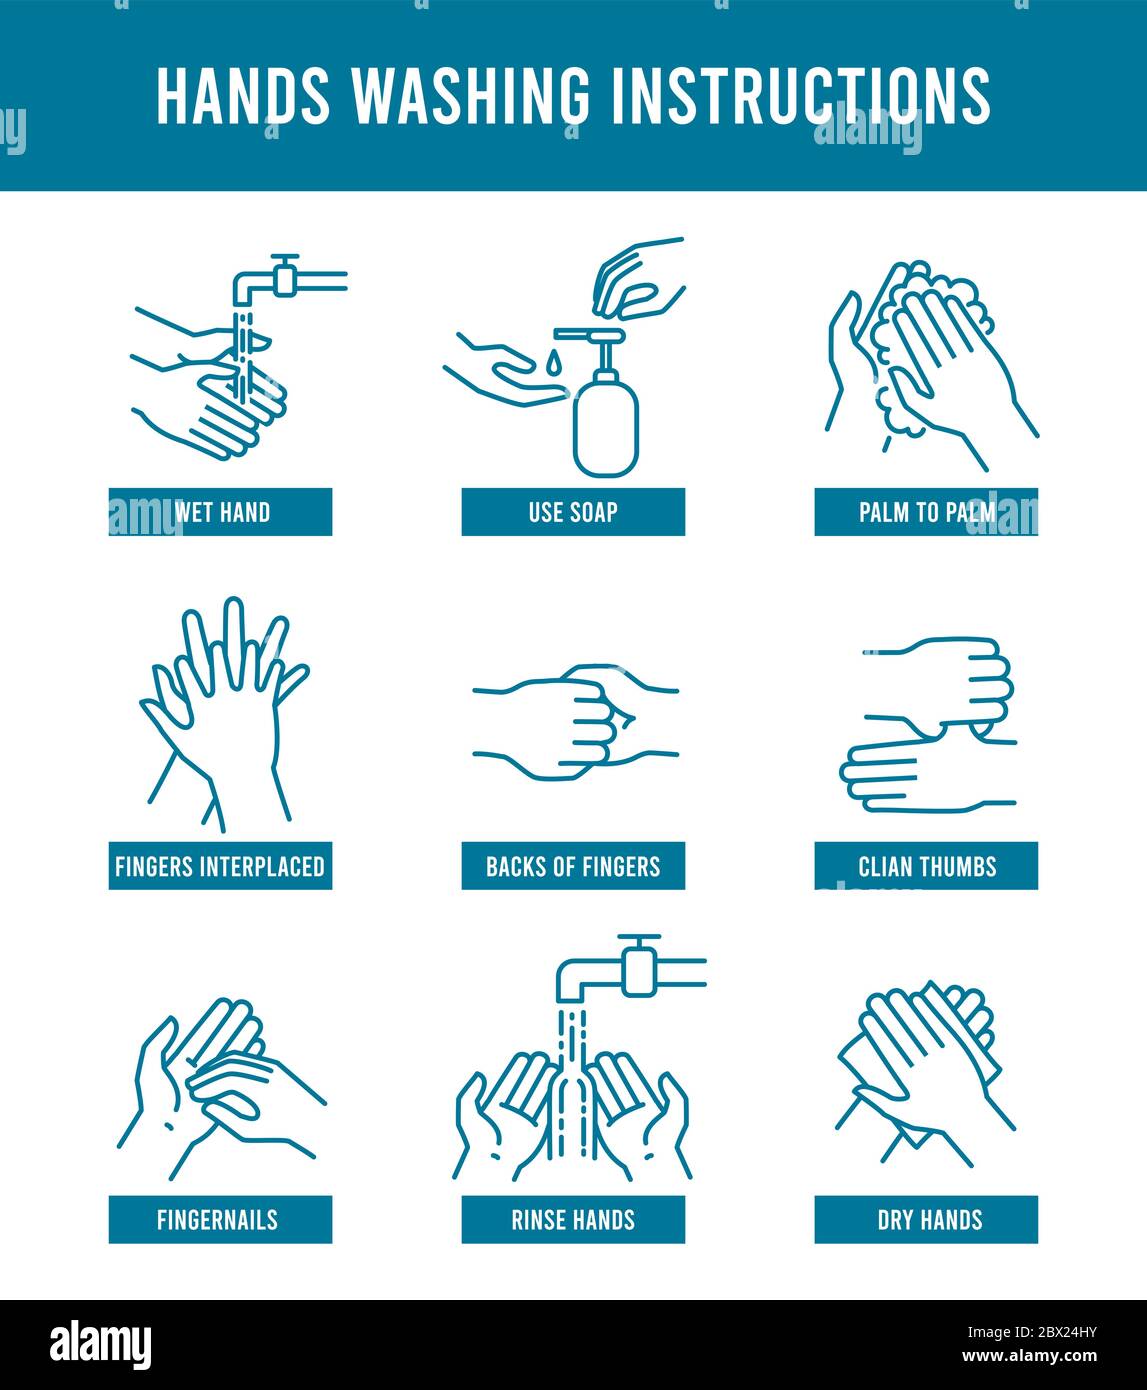 Instructions de lavage des mains. Tutoriel étape par étape pour se laver les mains sales. Protection de la santé, prévention des virus et hygiène des mains illustration vectorielle Illustration de Vecteur